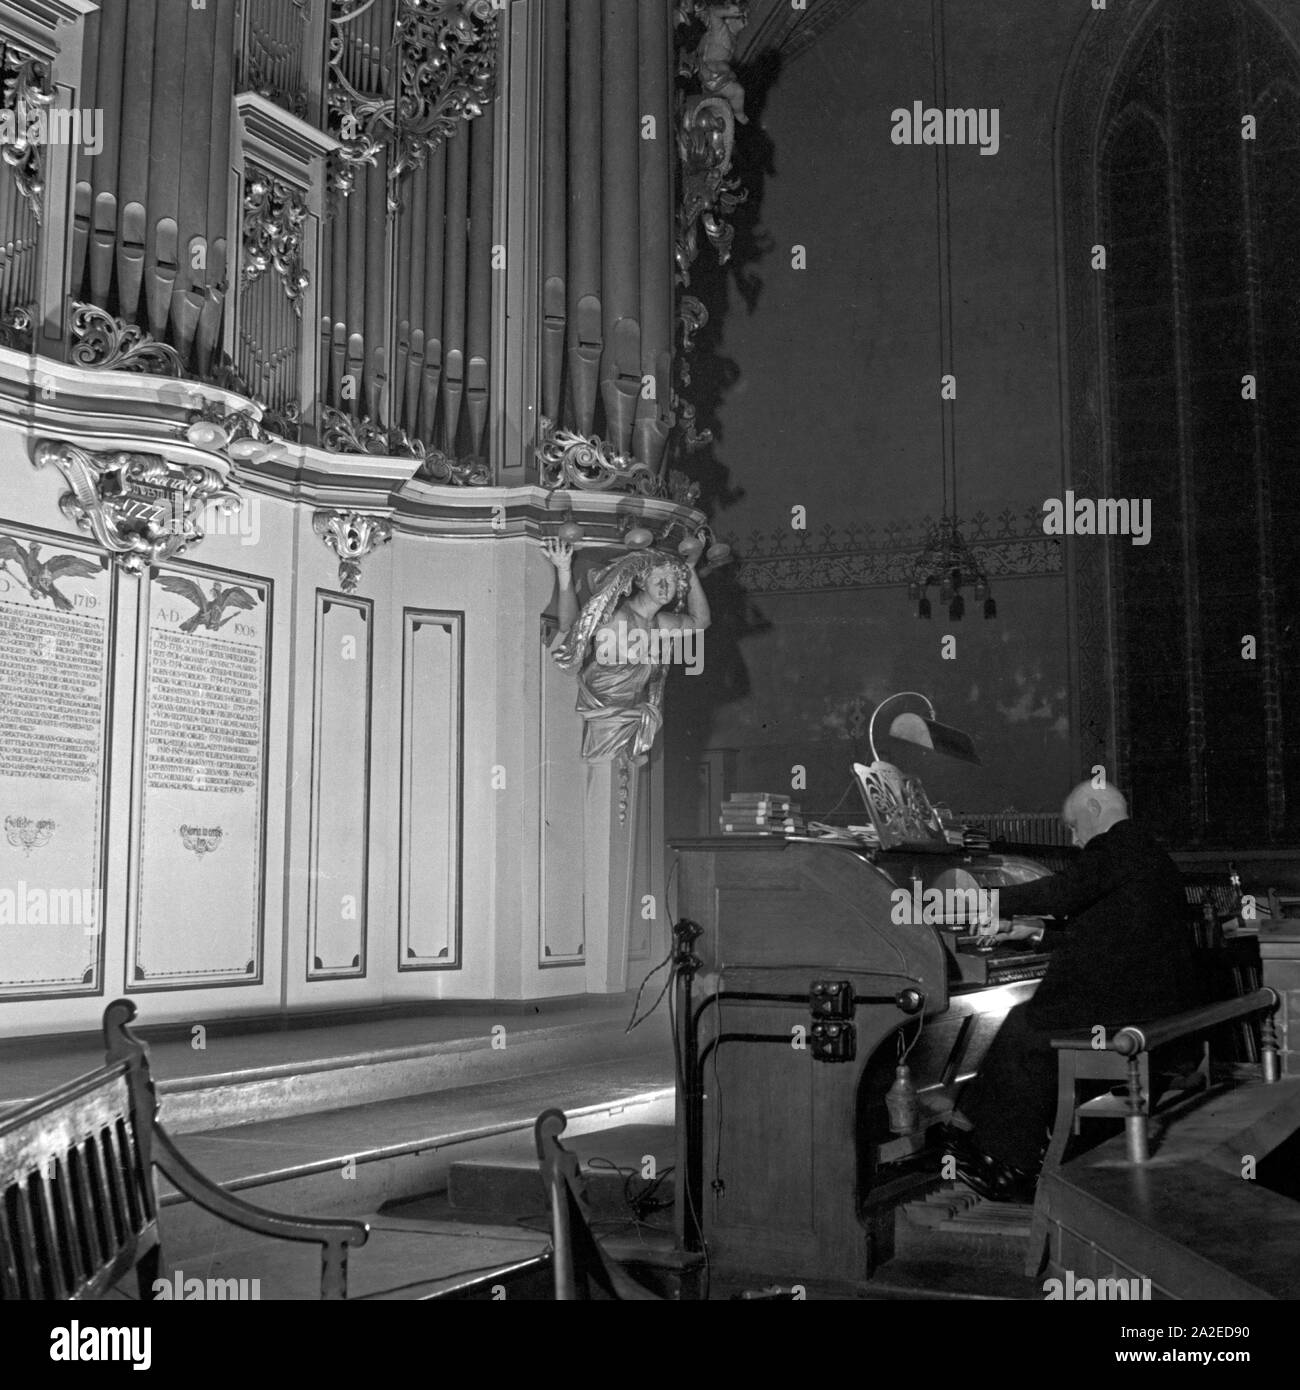 Ein Kantor spielt Orgel in einer Kirche in der Vorweihnachtszeit, Deutschland 1930er Jahre. Un uomo giocando l'organo presso una chiesa nella pre periodo natalizio, Germania 1930s. Foto Stock